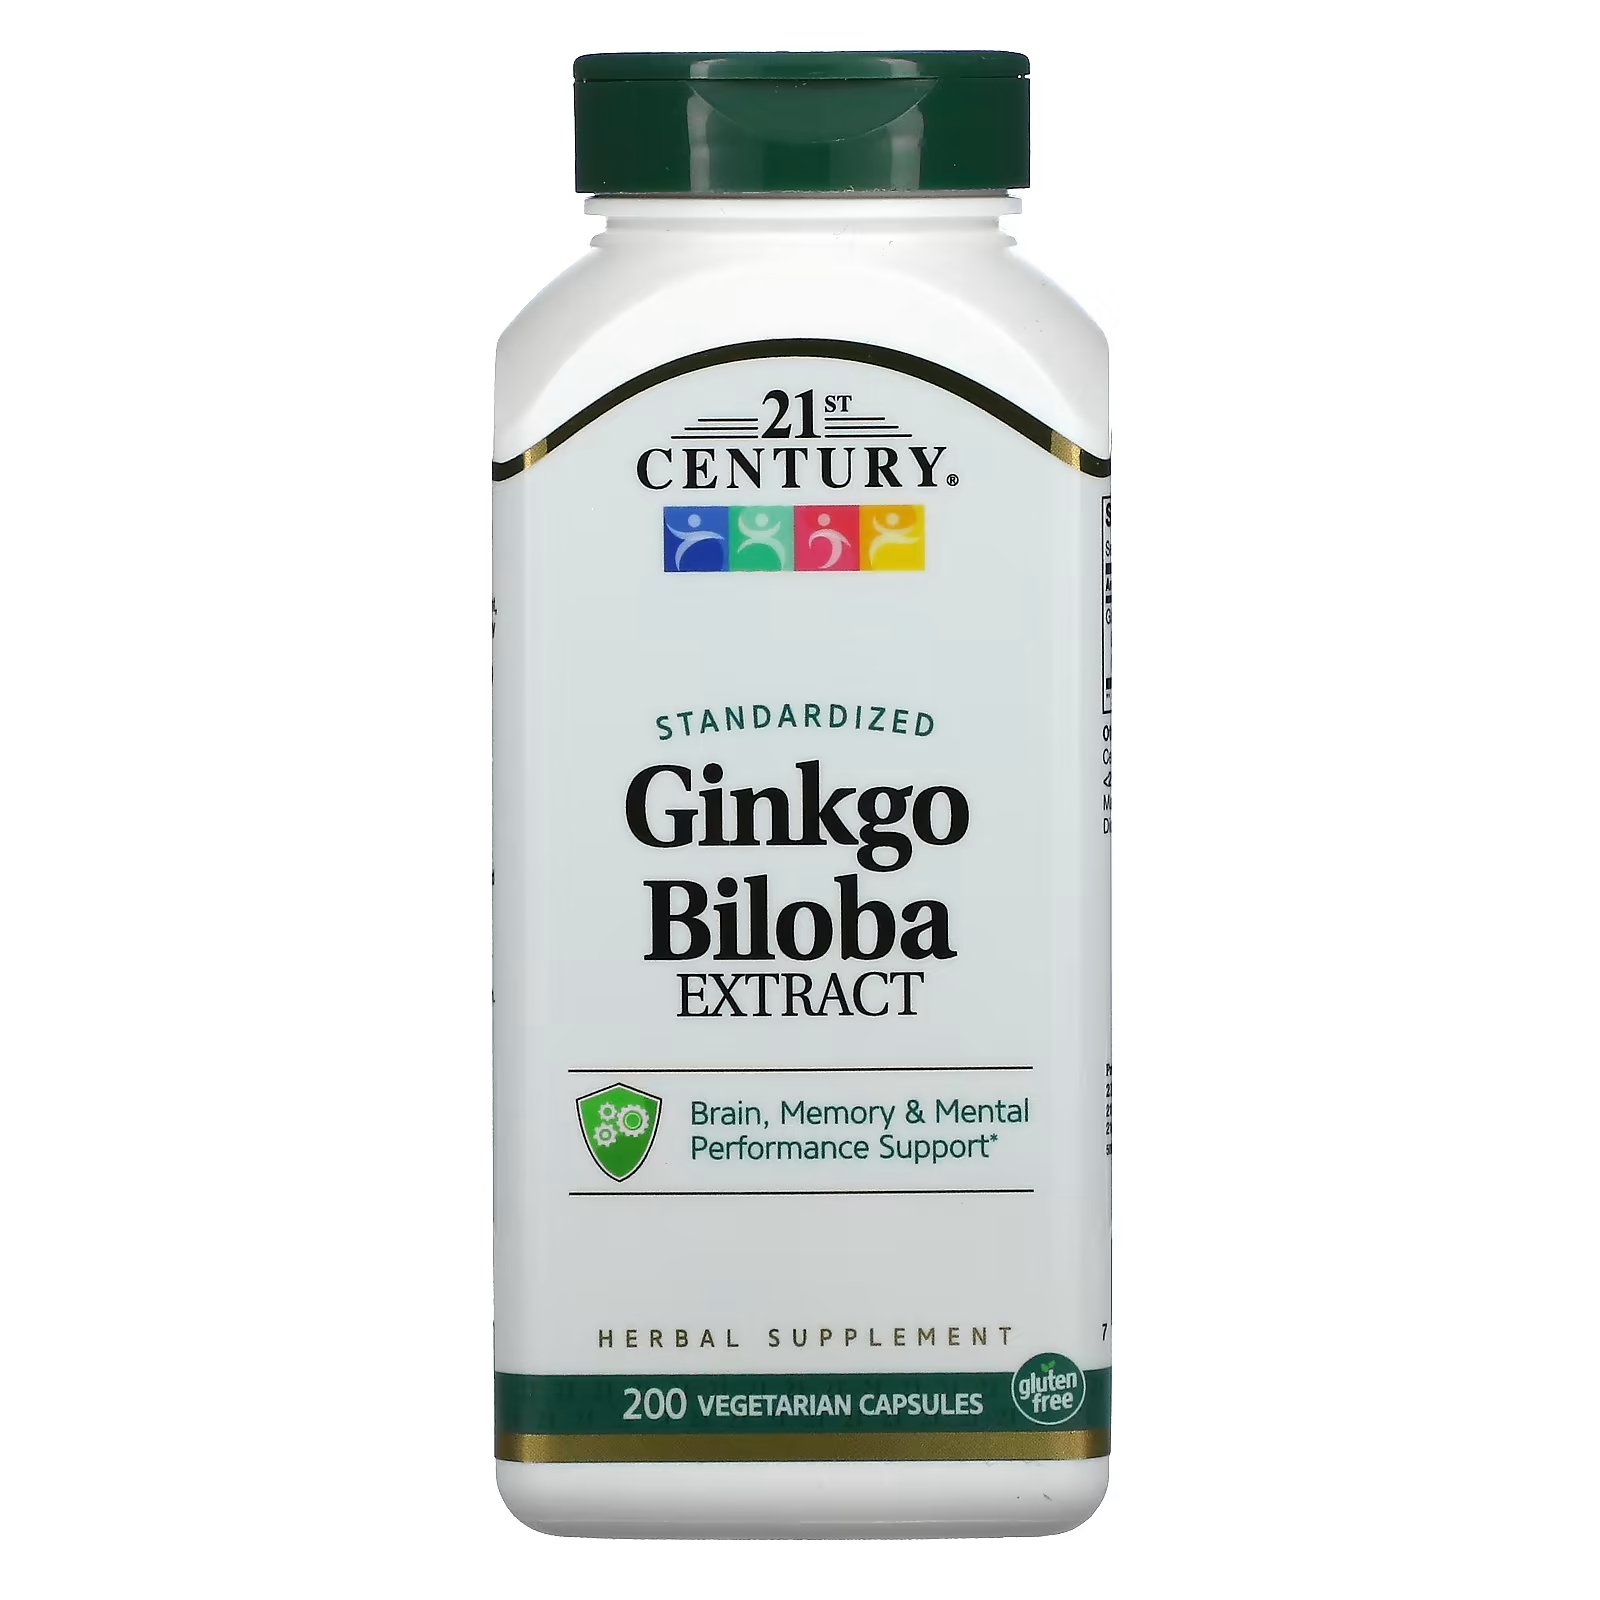 21st Century Экстракт Ginkgo biloba стандартизированный, 200 вегетарианских капсул